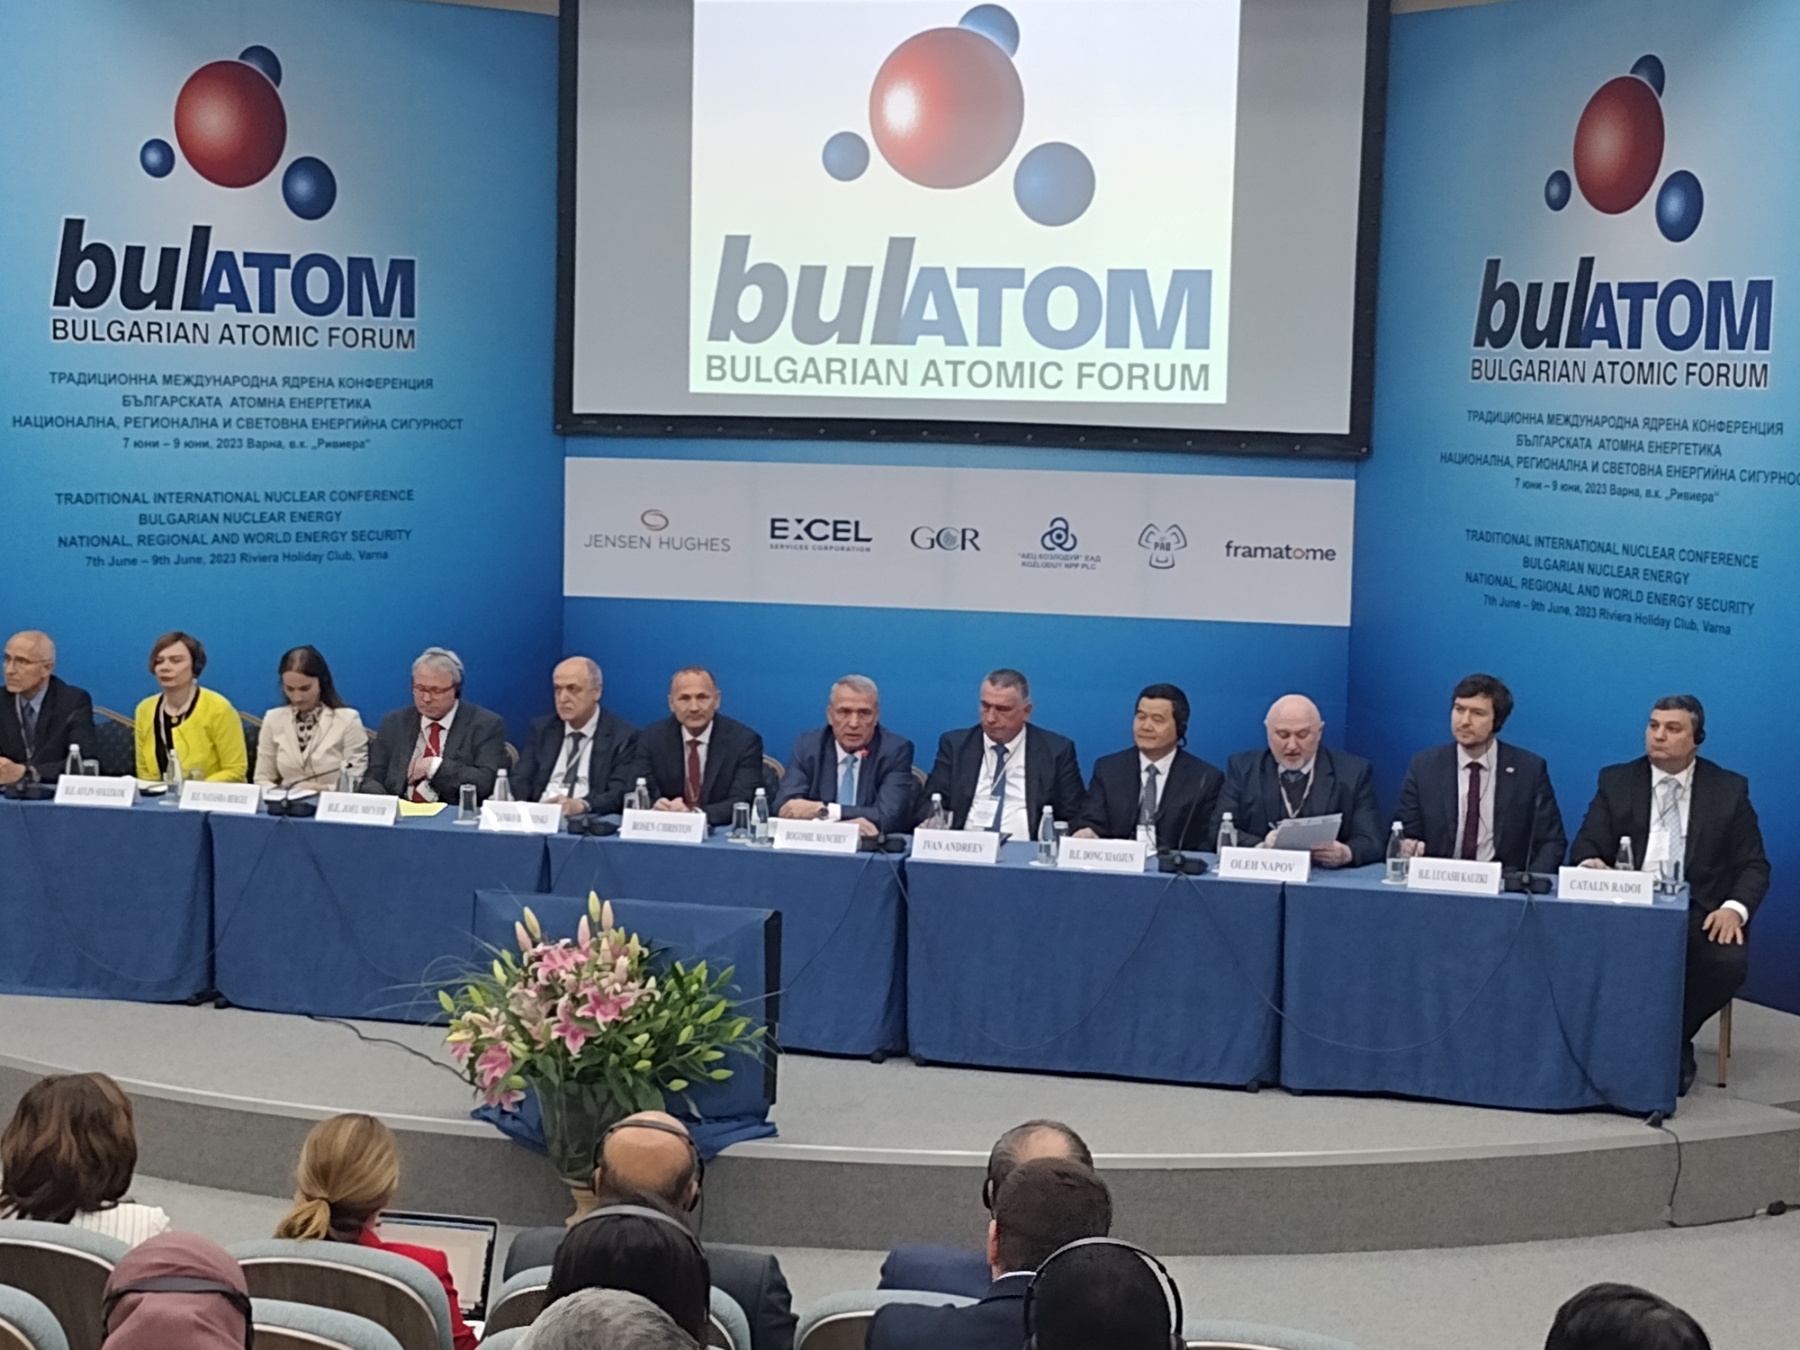 Започва тридневната международна ядрена конференция Българската атомна енергетика - национална,